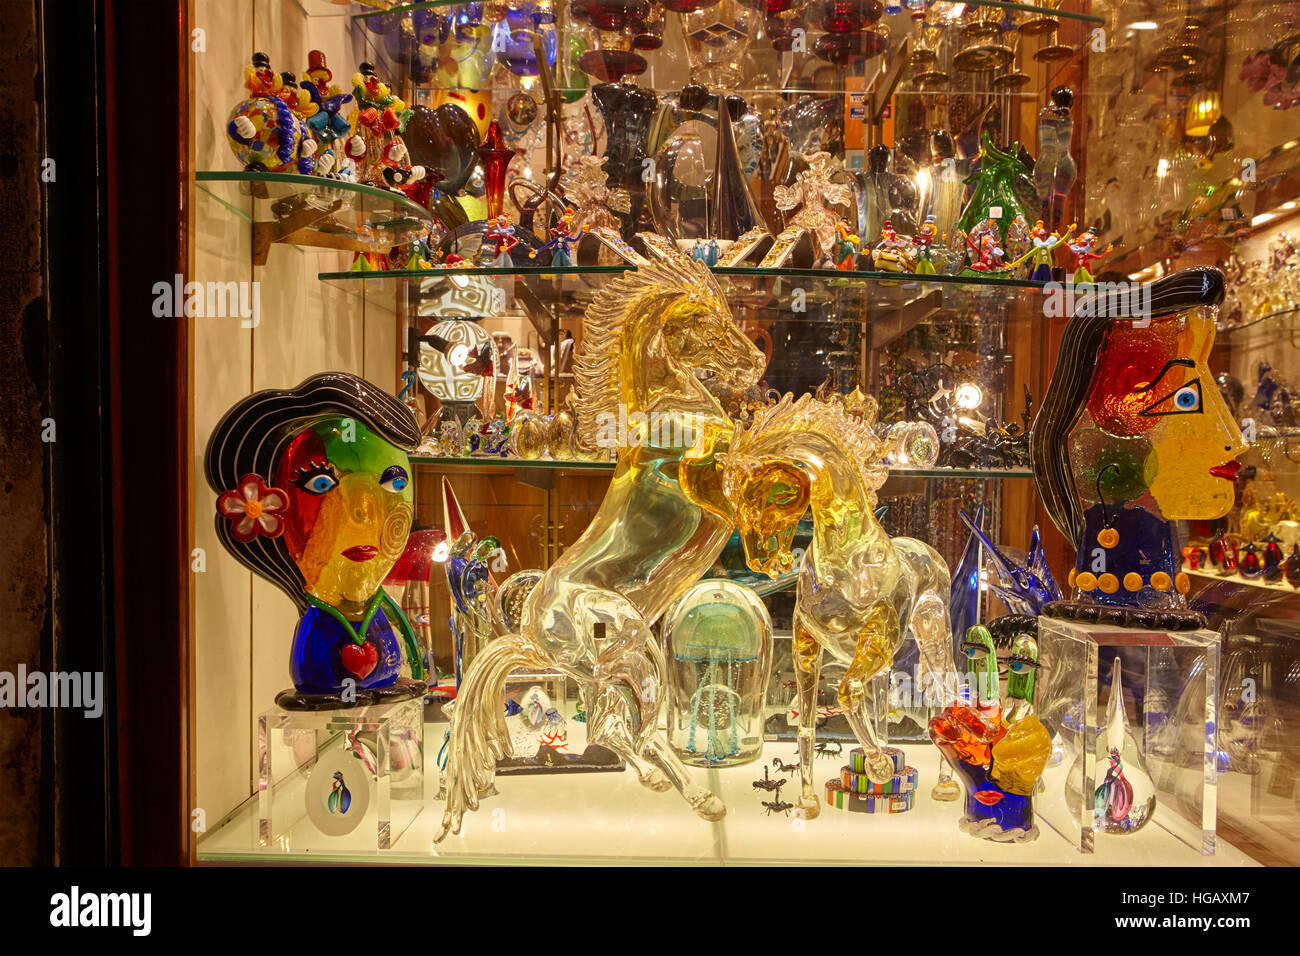 Boutique de produits en verre de Murano traditionnel, Venise, Italie Banque D'Images